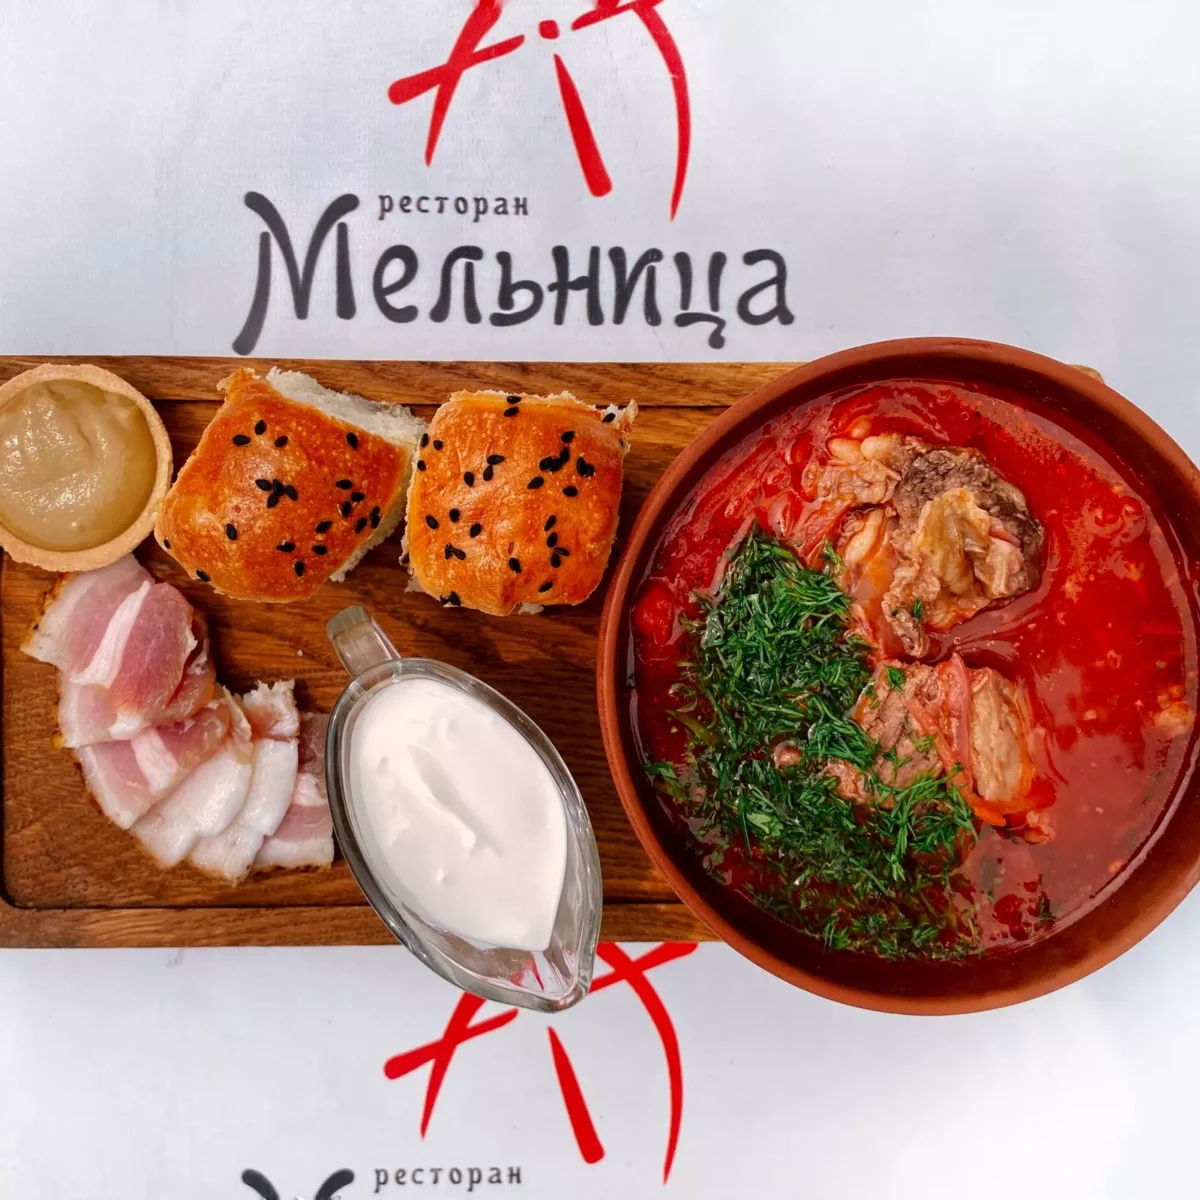 Борщ український • ресторан «мельница» м. Харків